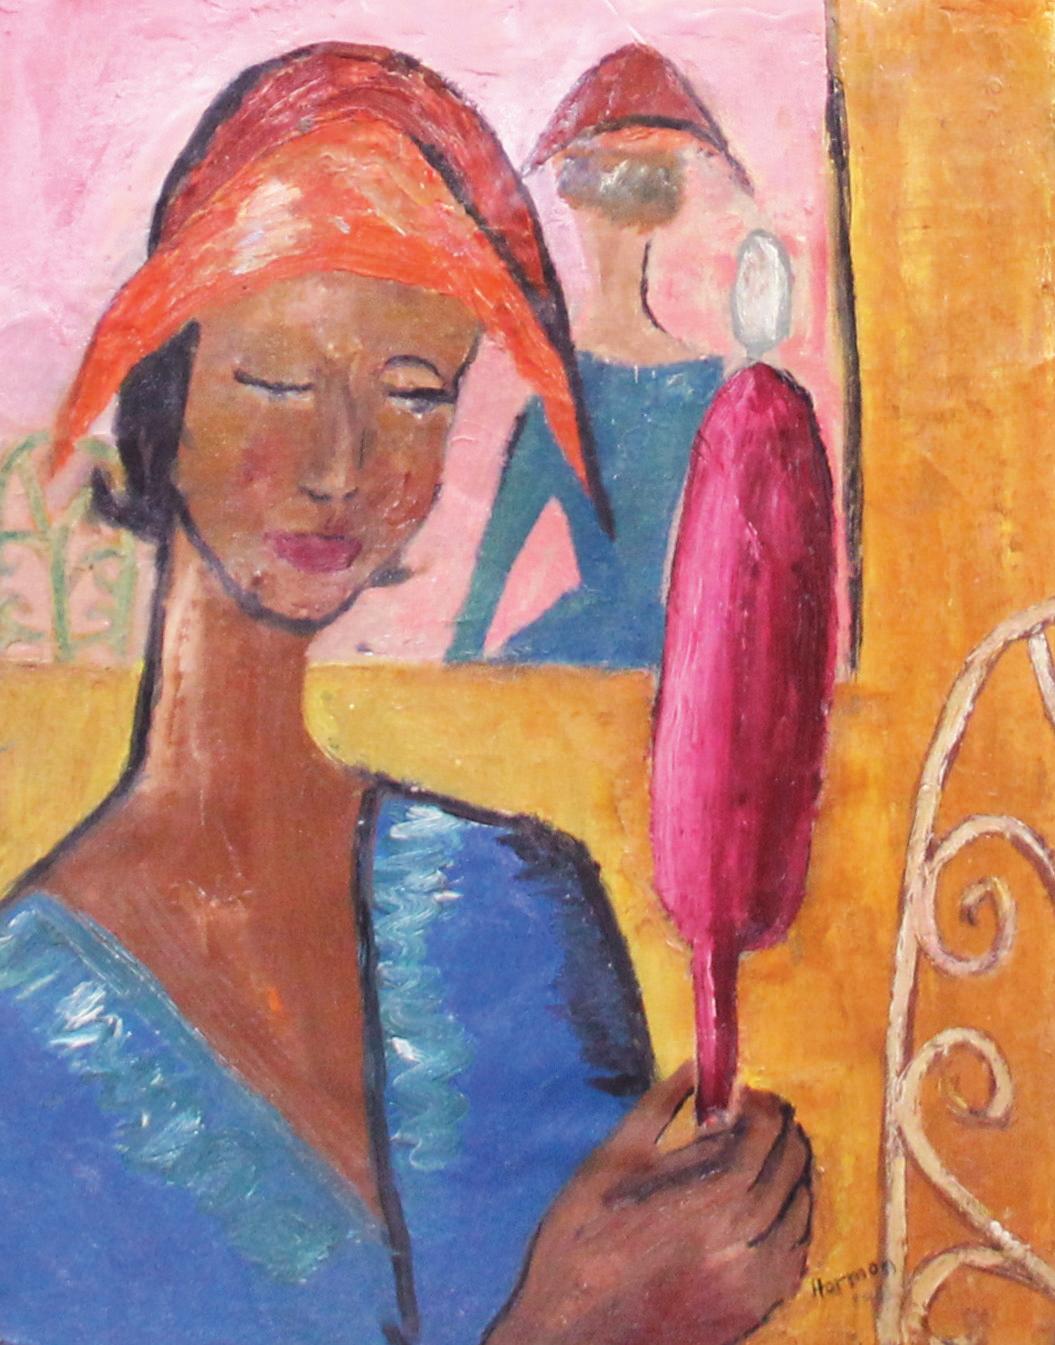 Neuer Hut, expressionistisches Porträt einer Frau von Künstlerin aus Philadelphia – Painting von Bernard Harmon